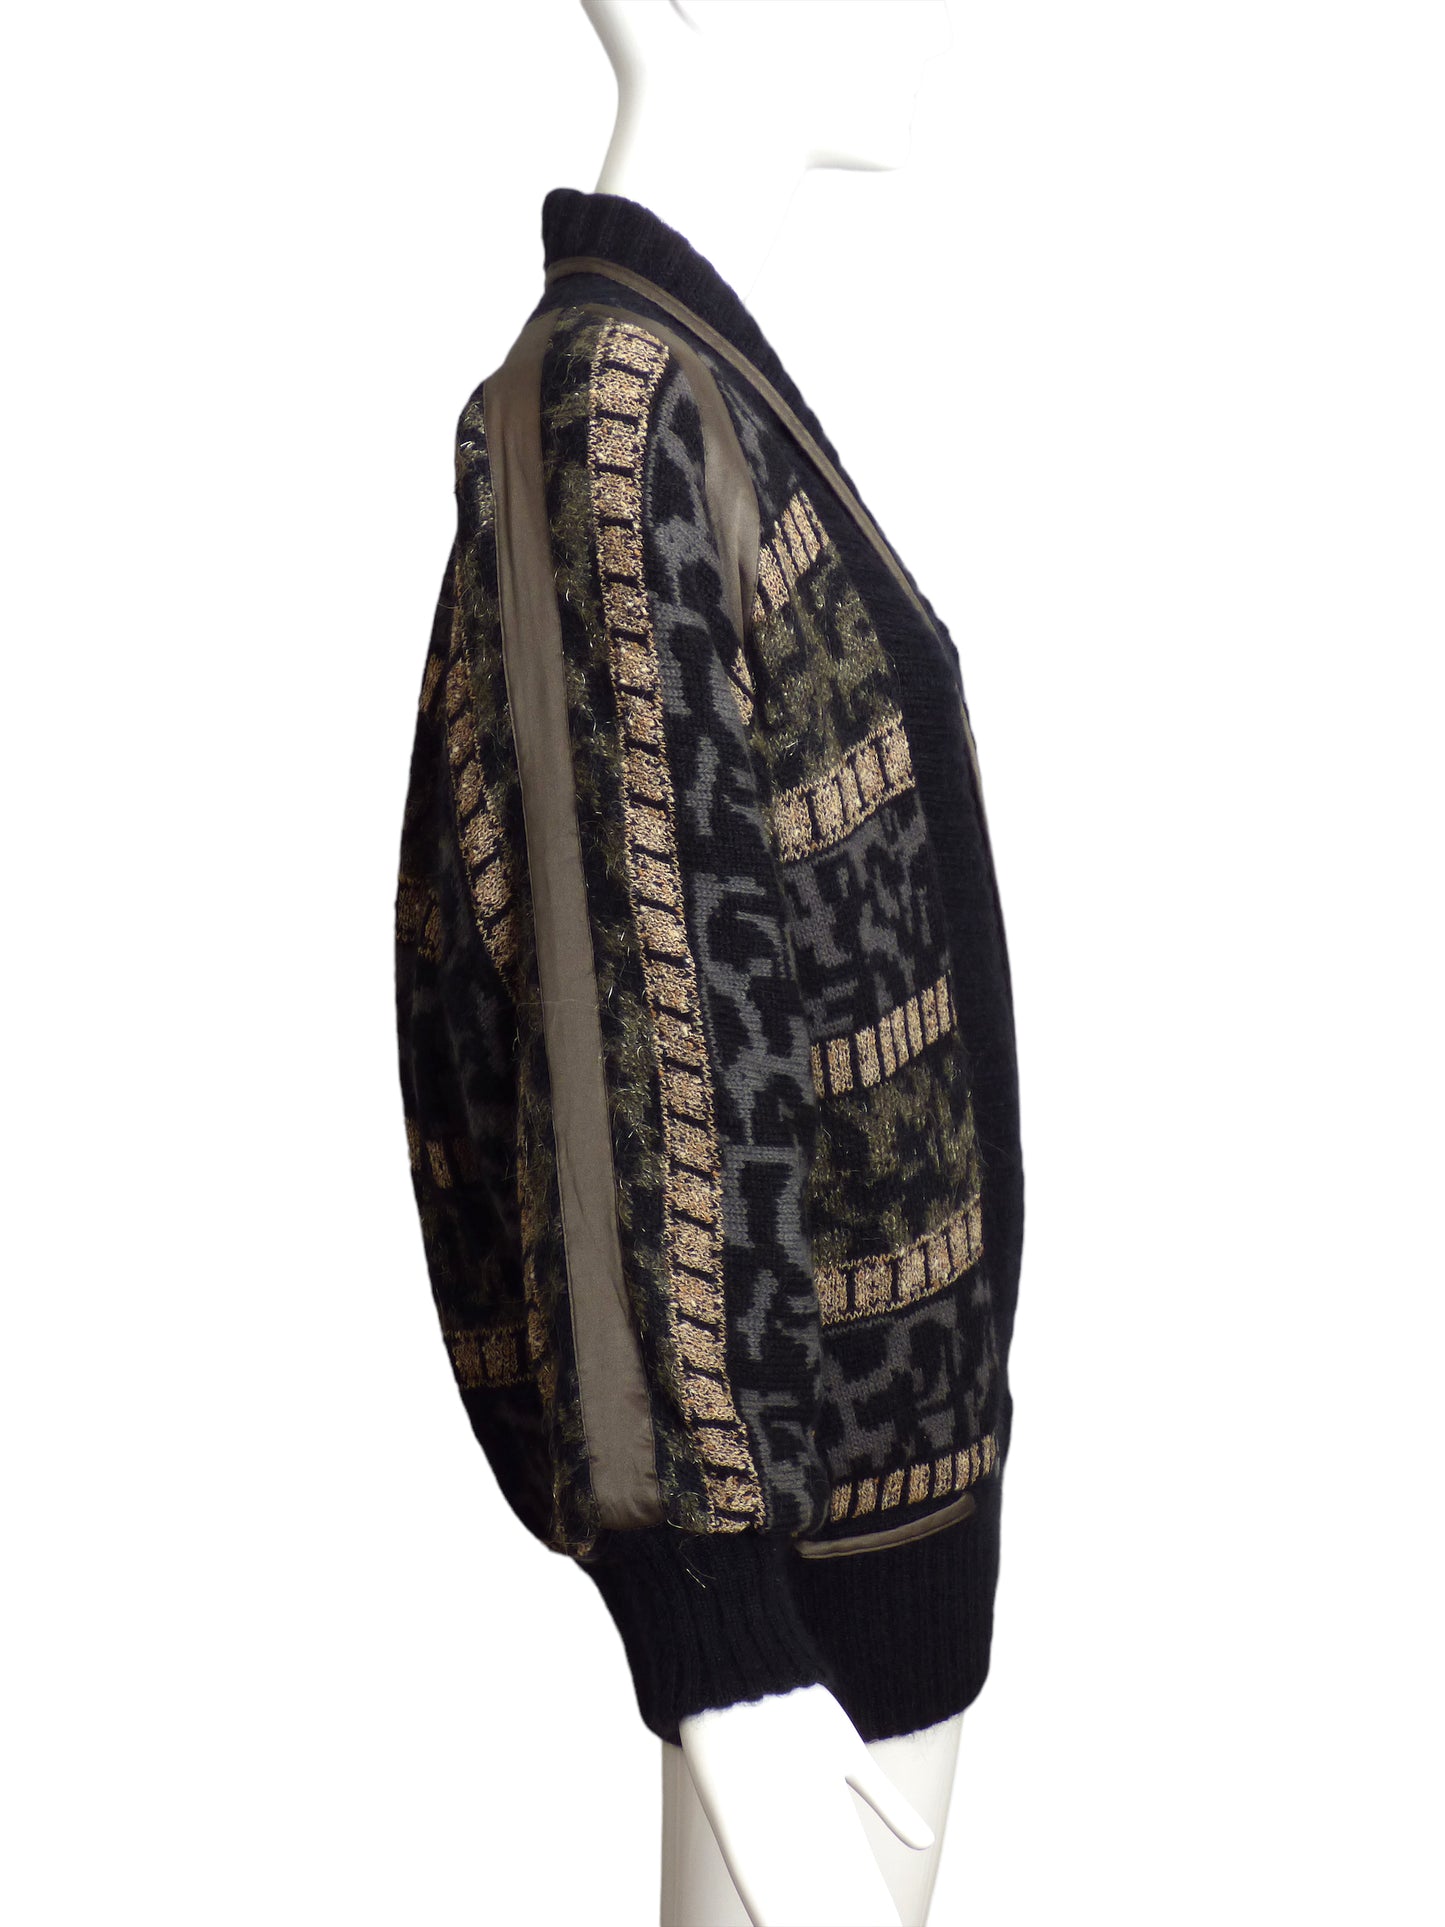 ESCADA- 1980s Mohair Cardigan Coat, Size 8